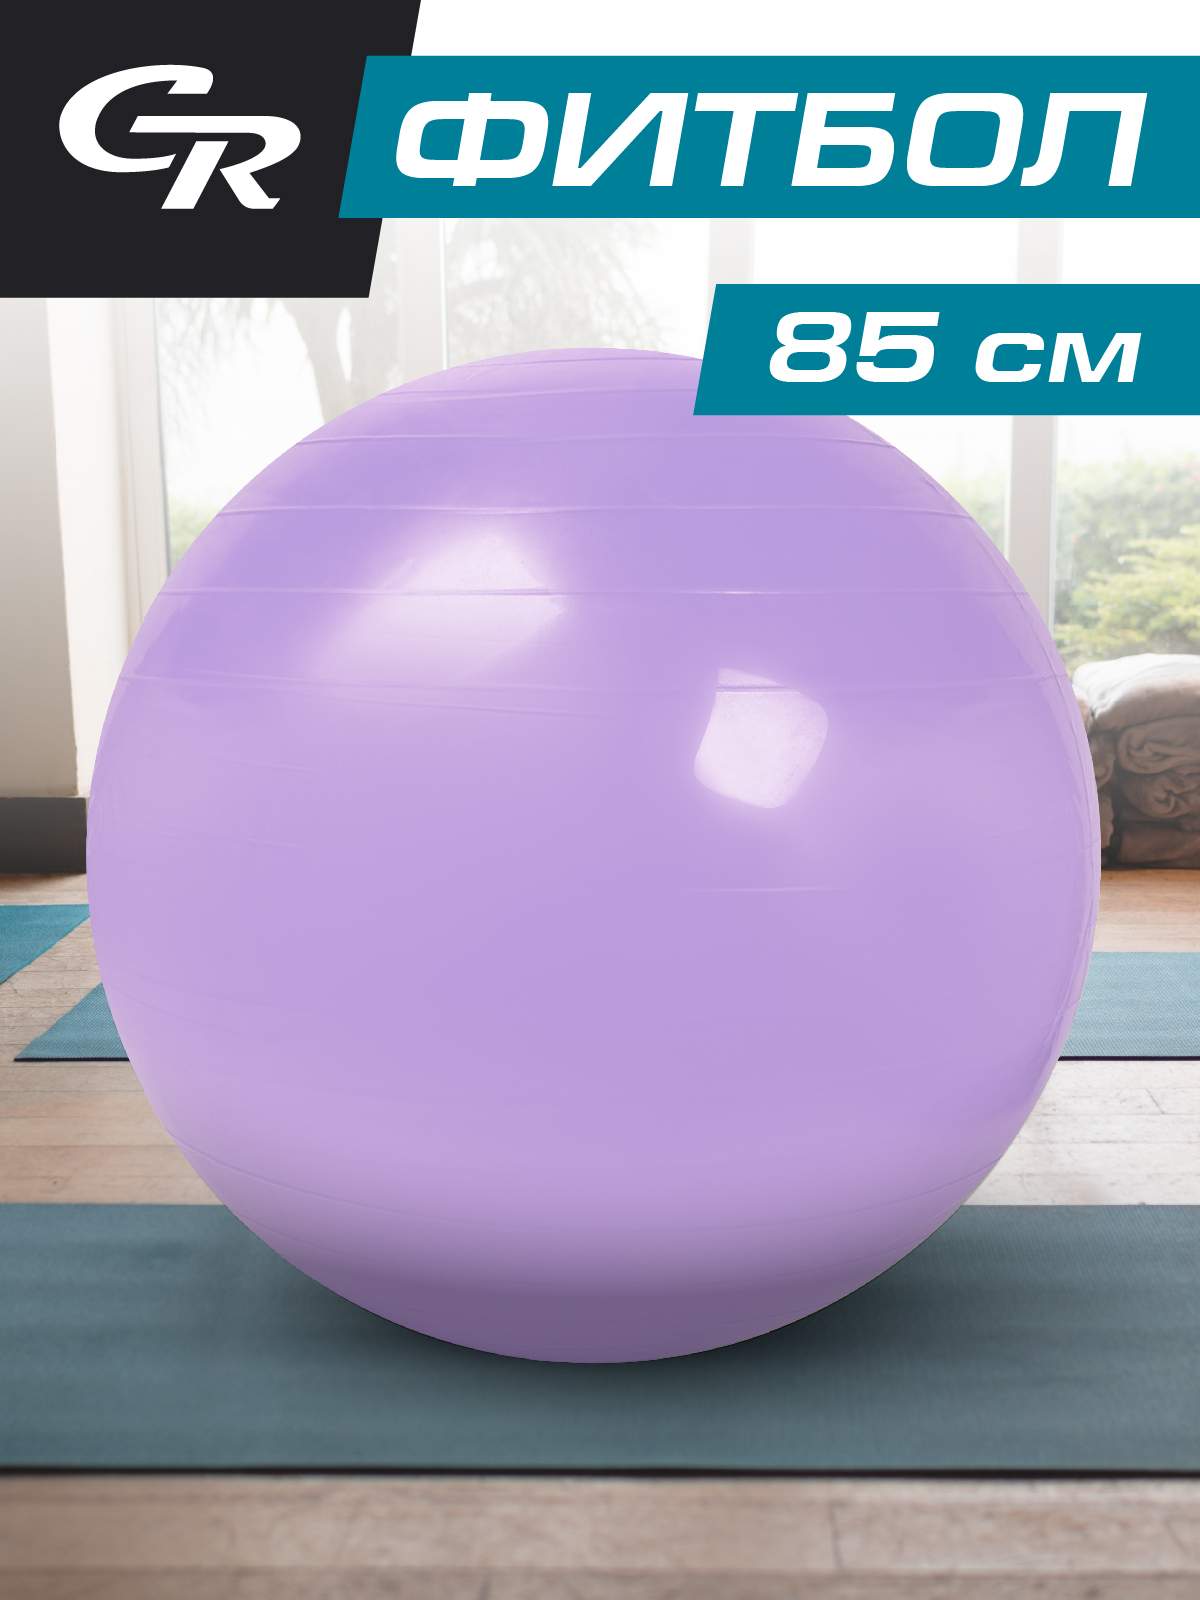 Мяч гимнастический, фитбол, для фитнеса, диаметр 85 см, ПВХ, лавандовый, JB0210294